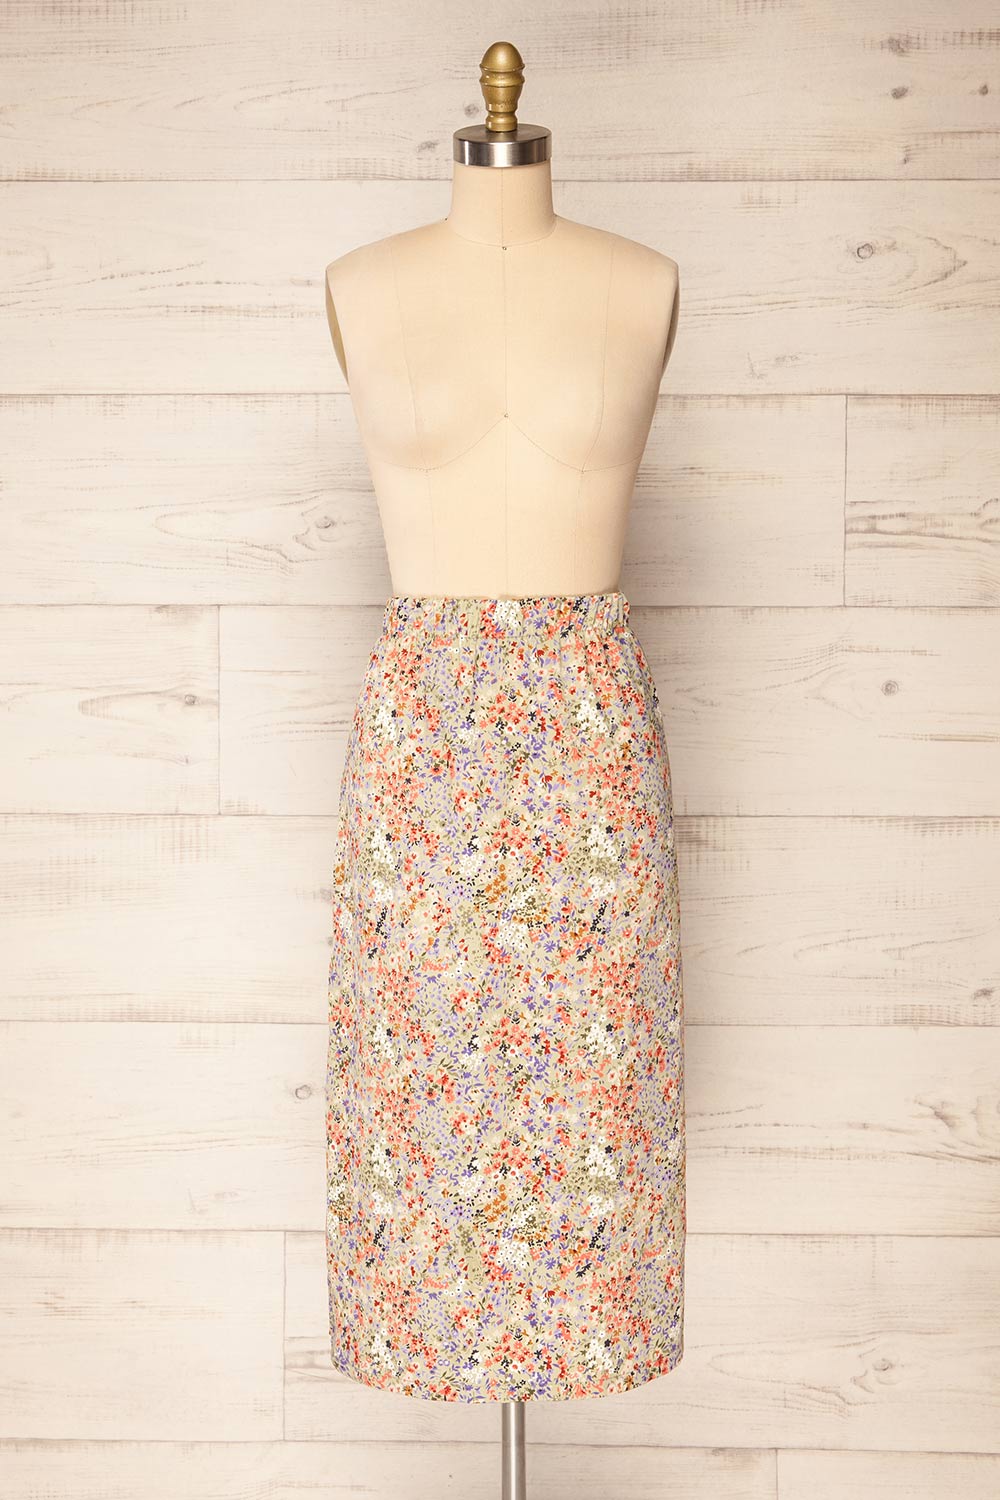 Pajai Floral Print Midi Skirt w/ Elastic Waist | La petite garçonne front view